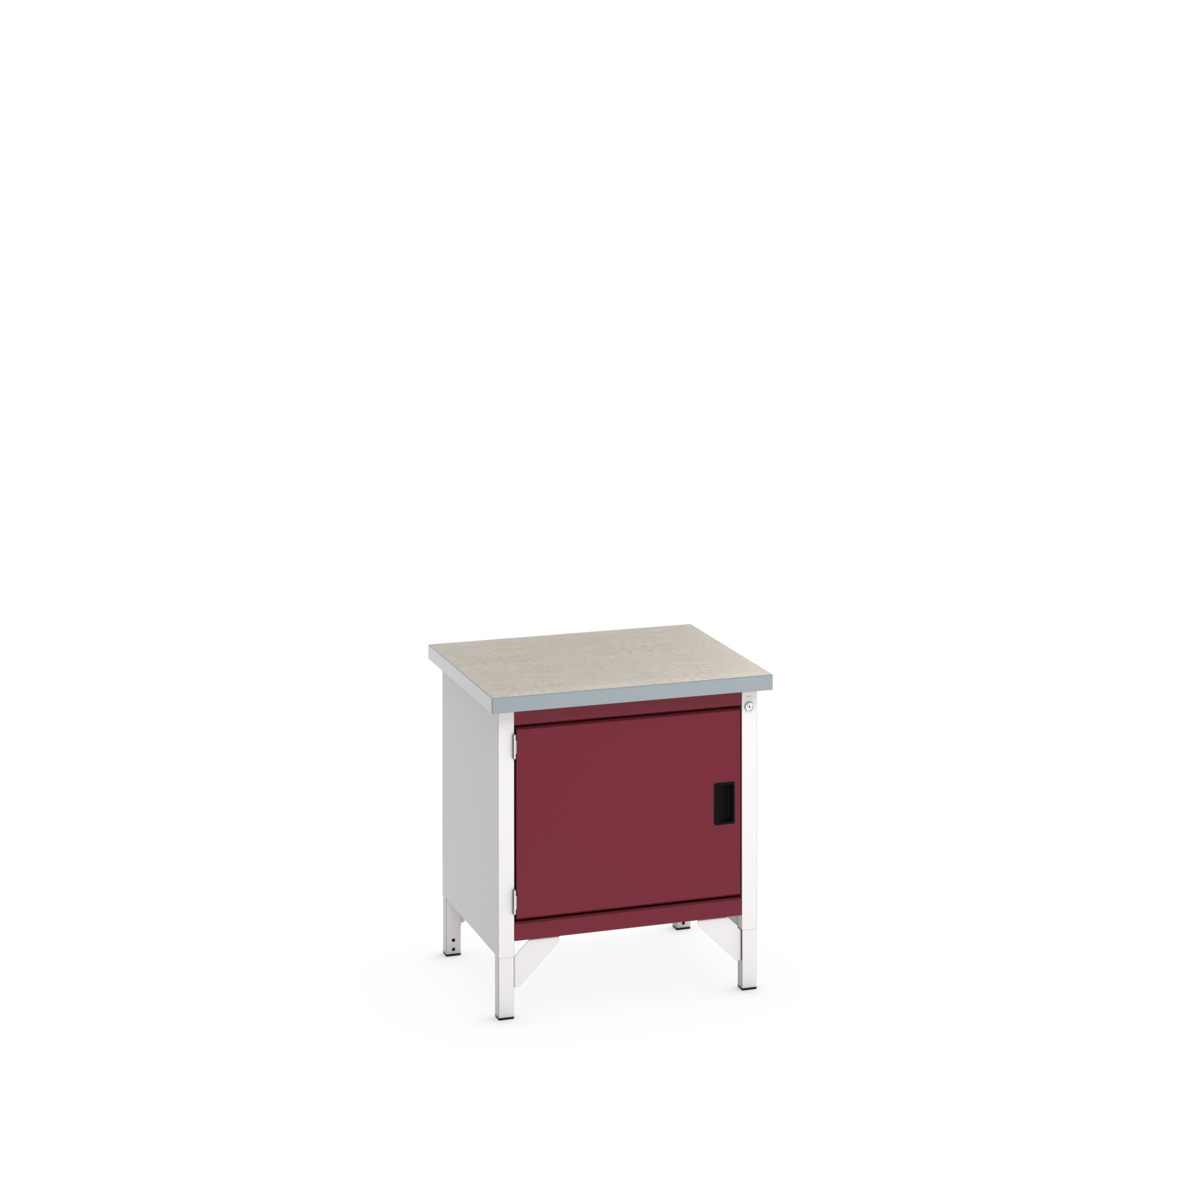 41002006.24V - cubio storage bench (lino)